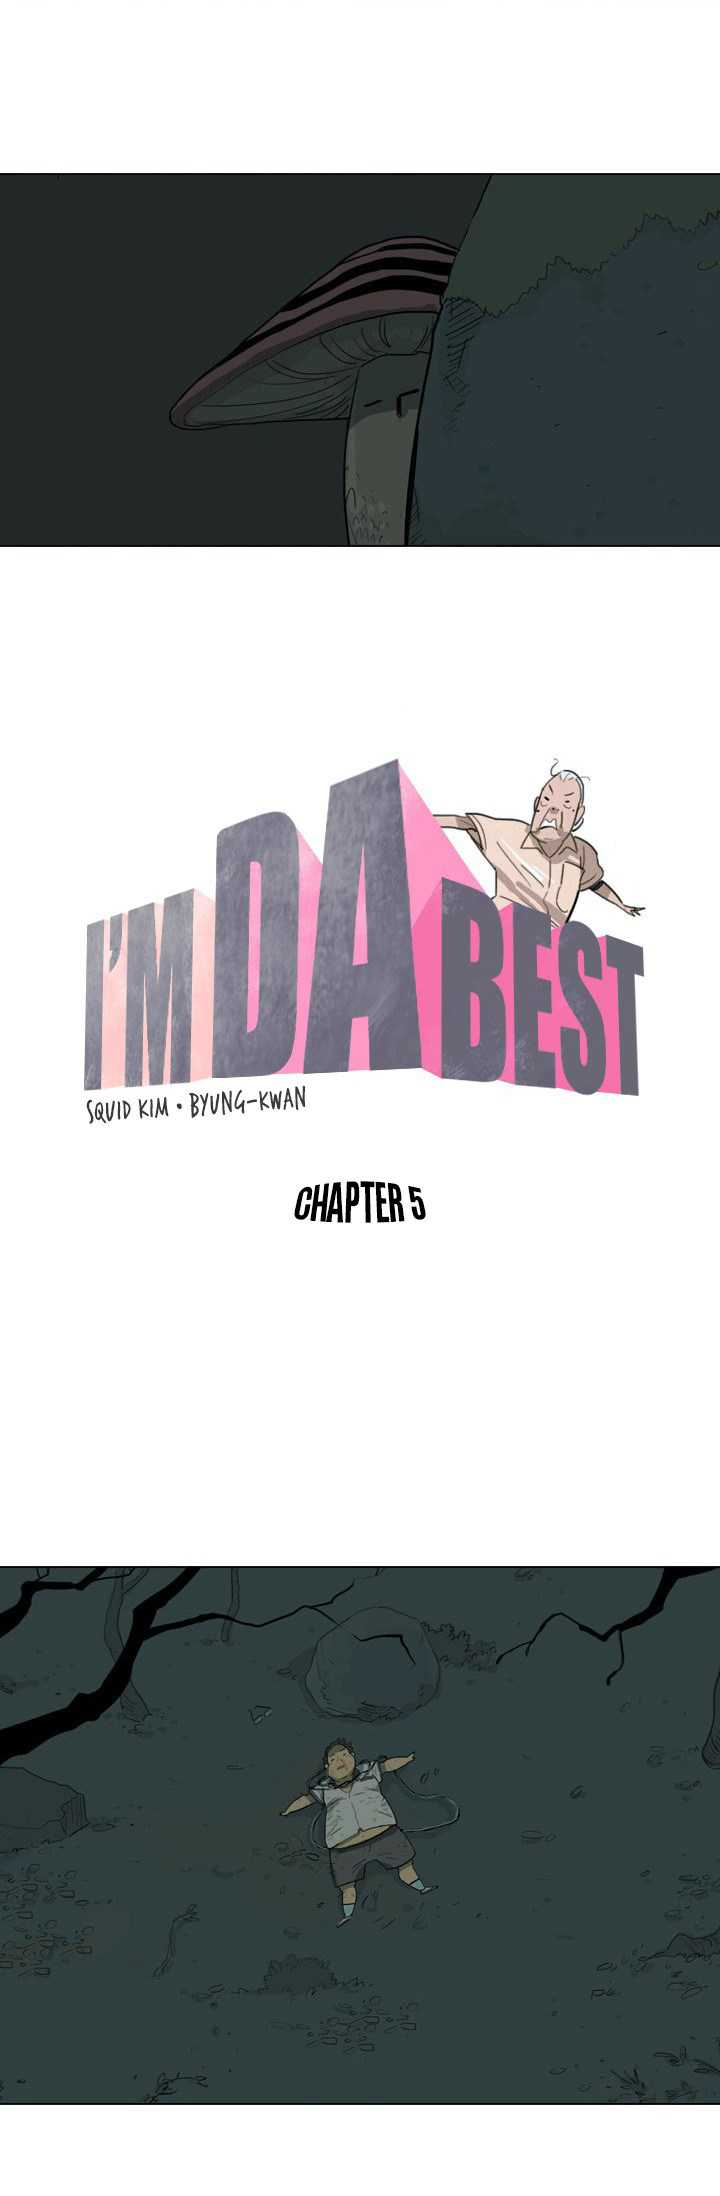 I’m da best Chapter I’m da best capter 5